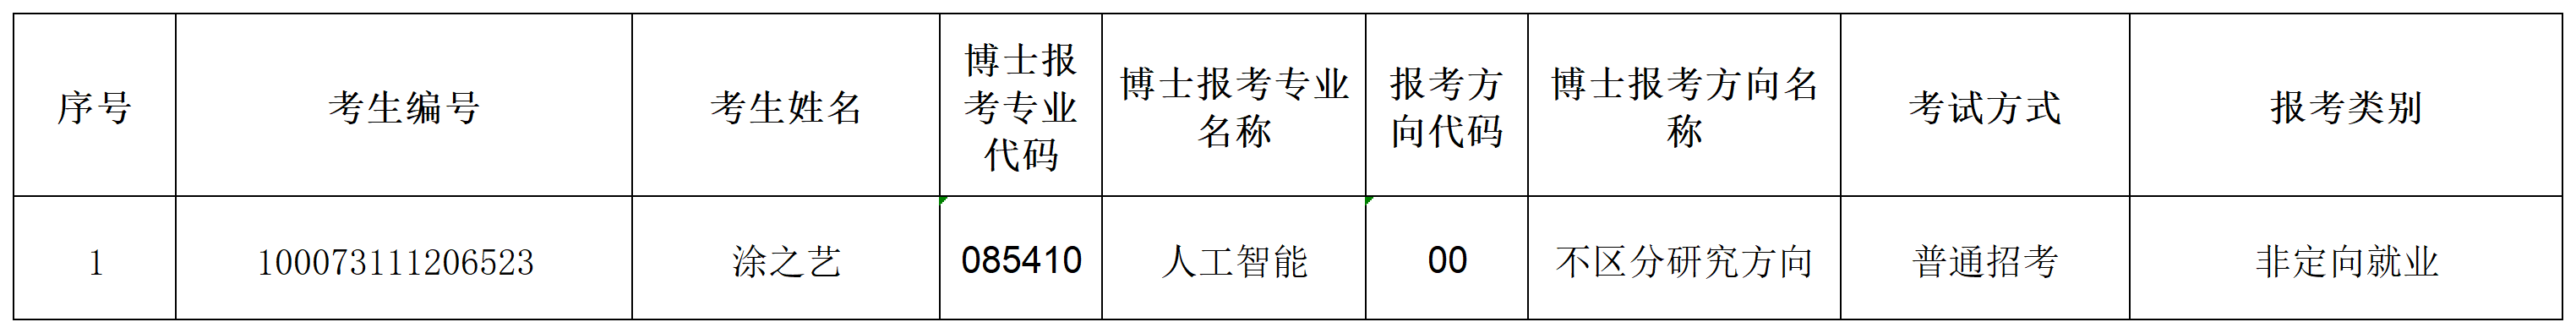 博盈彩票2023年招收攻读博士学位研究生专项计划准考名单(1)_Sheet1.png